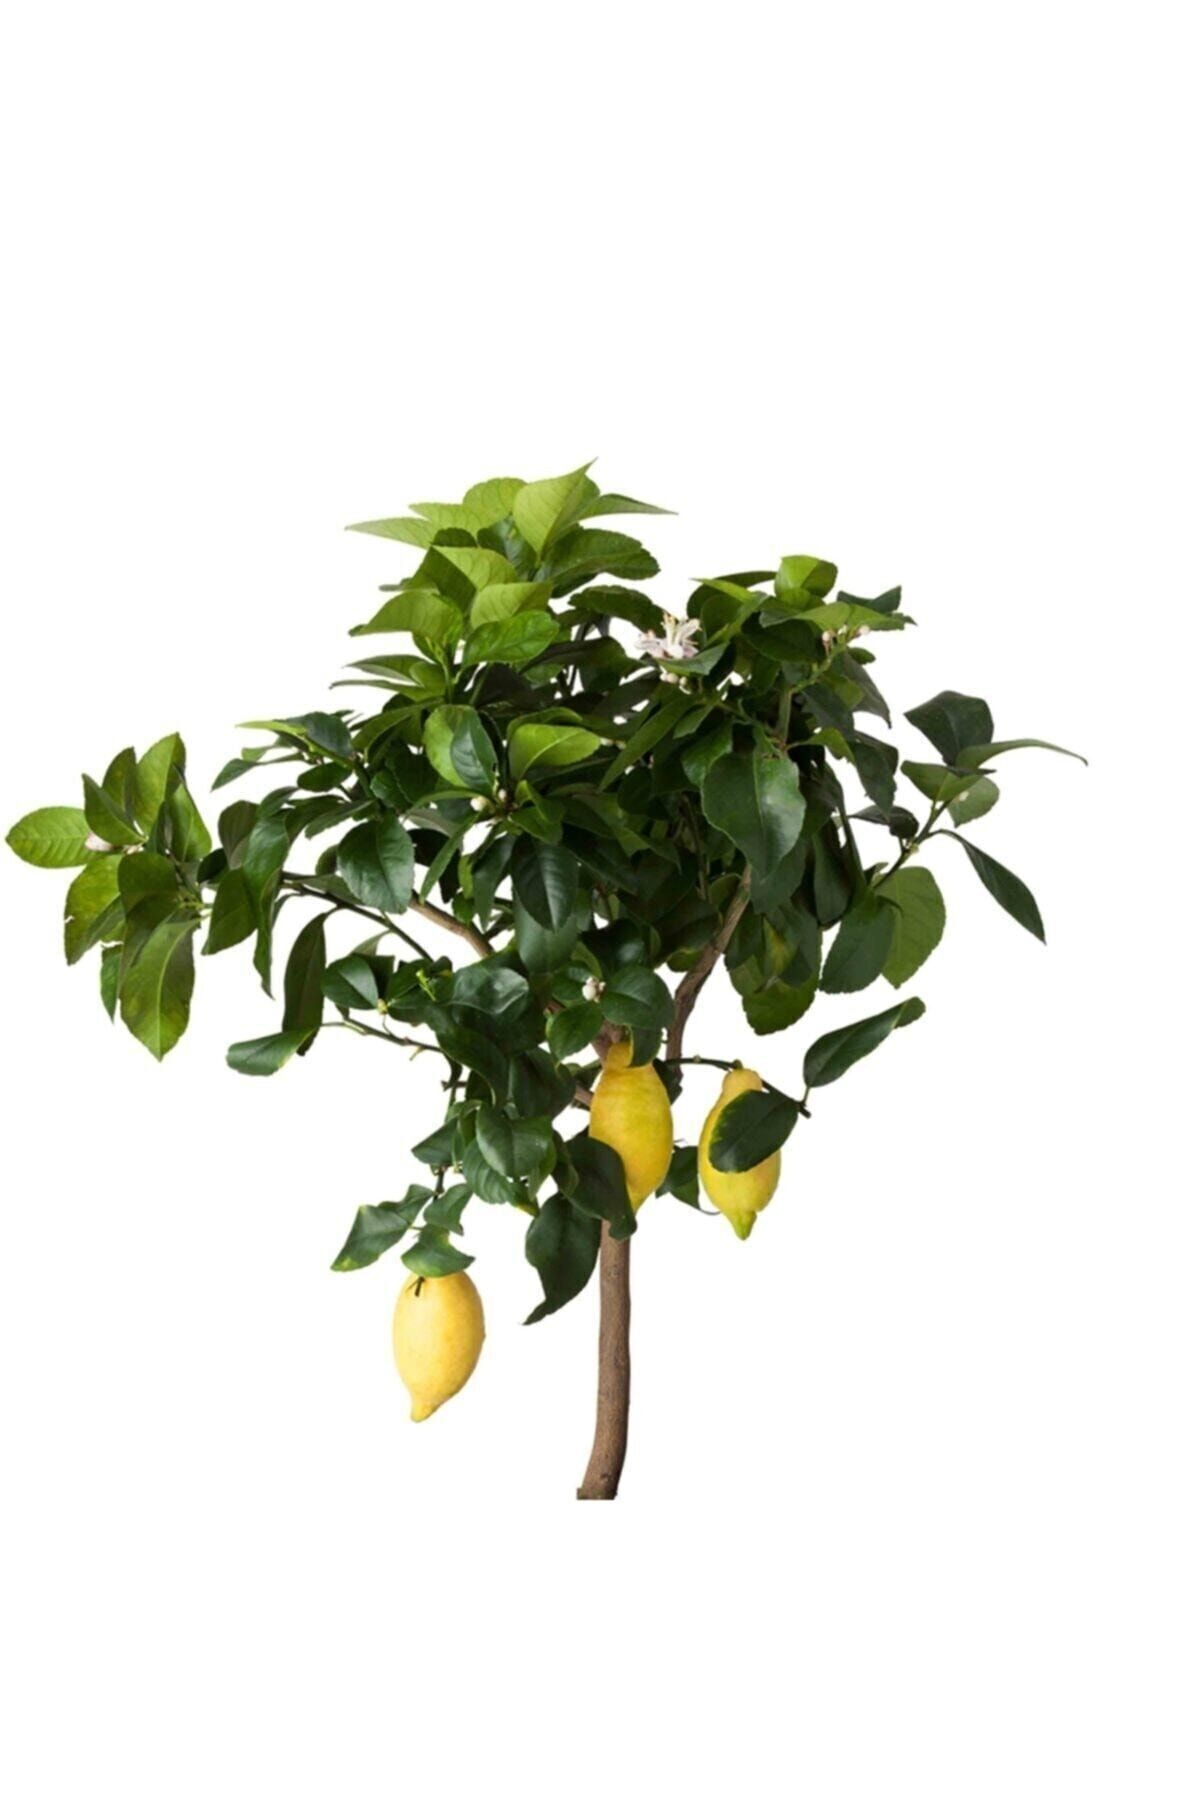 Hepsibahçemden Tam Bodur Mayer Limon Ağacı Yediveren - Dörtmevsimbahçe